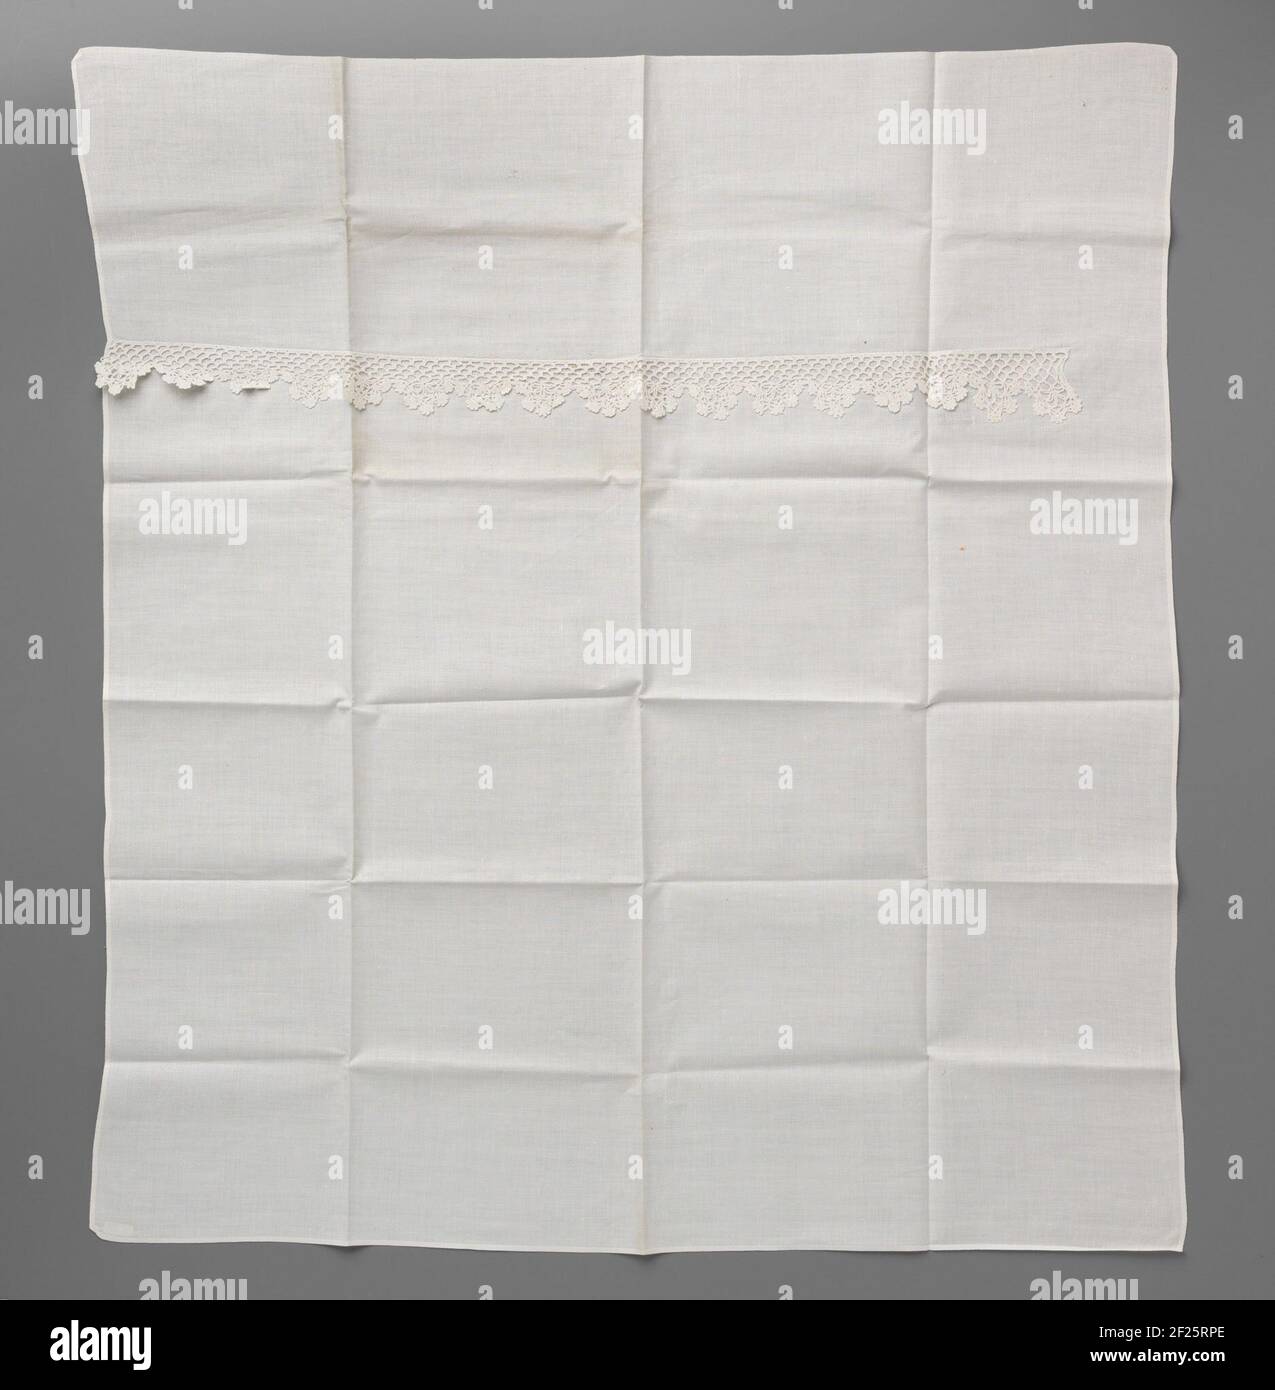 Plankkleed van katoen met een gehaakte schulprand.planking tappeto di cotone bianco con un bordo inclinato di lato crocheted. Modello quadrato con il lato a crochet della striscia a circa una parte dall'altezza. La striscia non è interamente sulla larghezza completa del tappeto. Il vestito a tavola è destinato ad un armadio di lino. Uno degli angoli è il resto di un ricamo ancora integro al BK-1974-27-A: Le iniziali TVD con il numero 6 qui sotto. Foto Stock